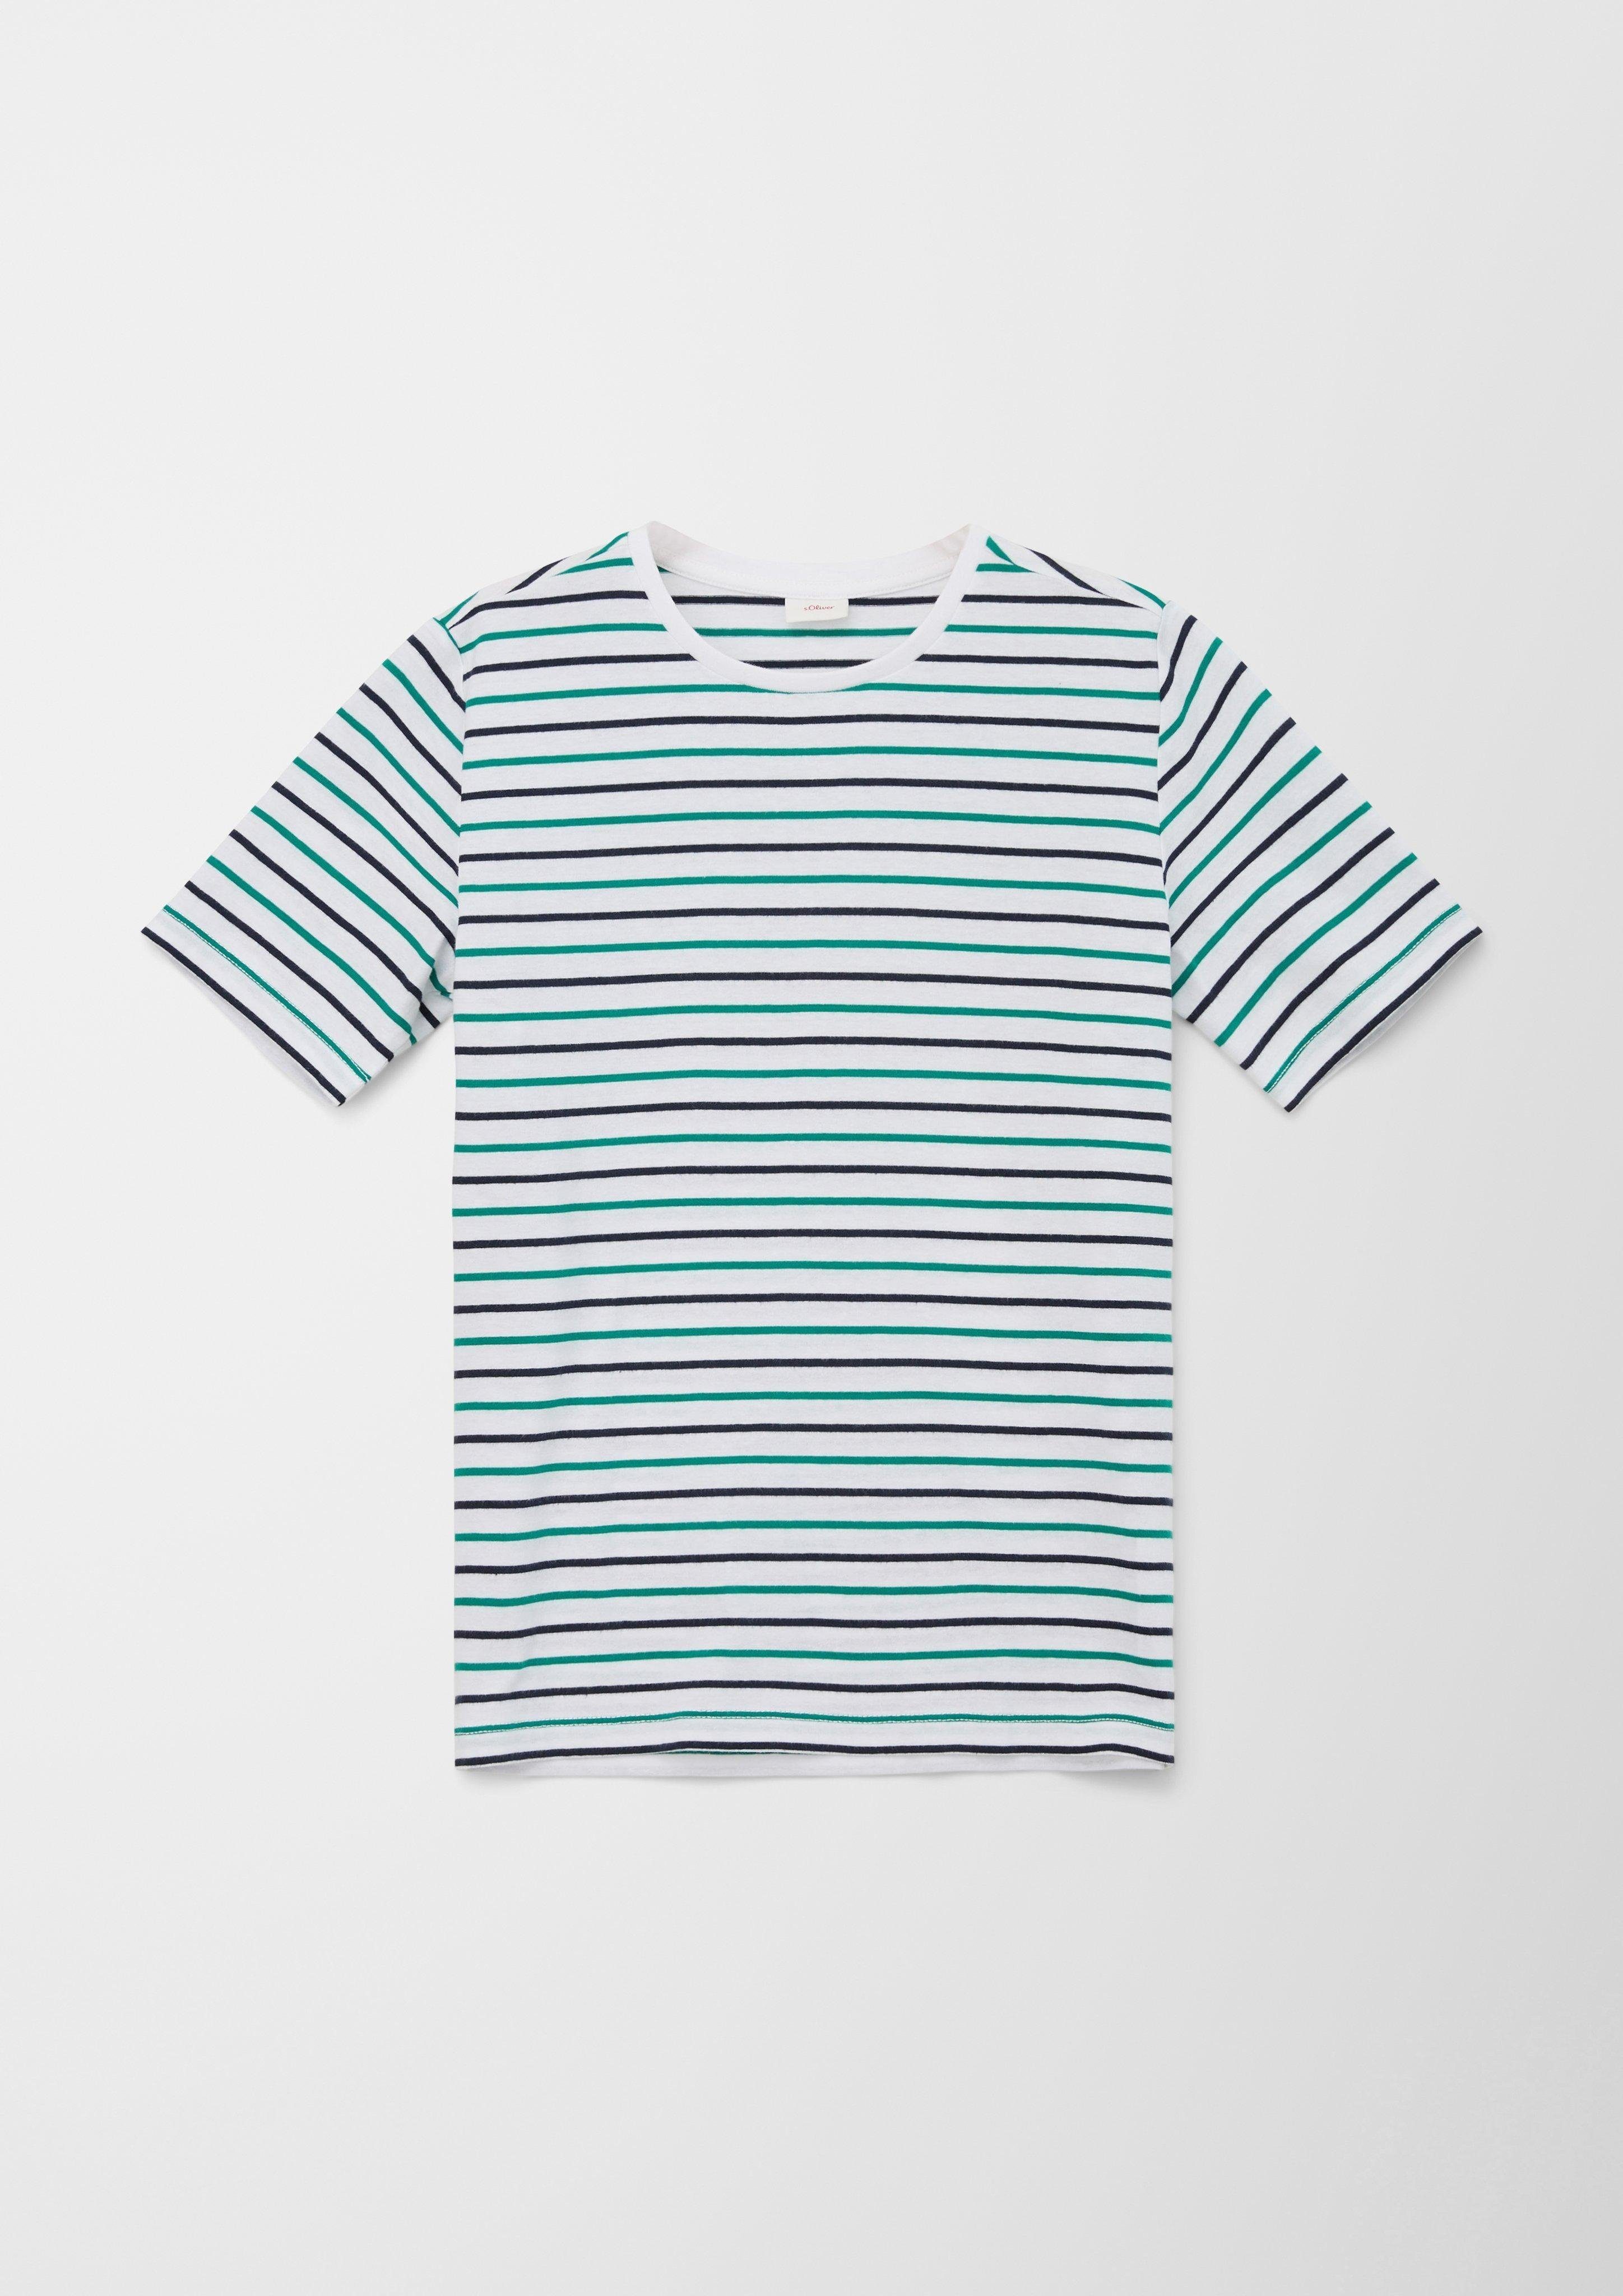 in mit Streifen, Baumwolle, Jersey, Kurzarmshirt schwerer weich, T-Shirt aus Qualität s.Oliver